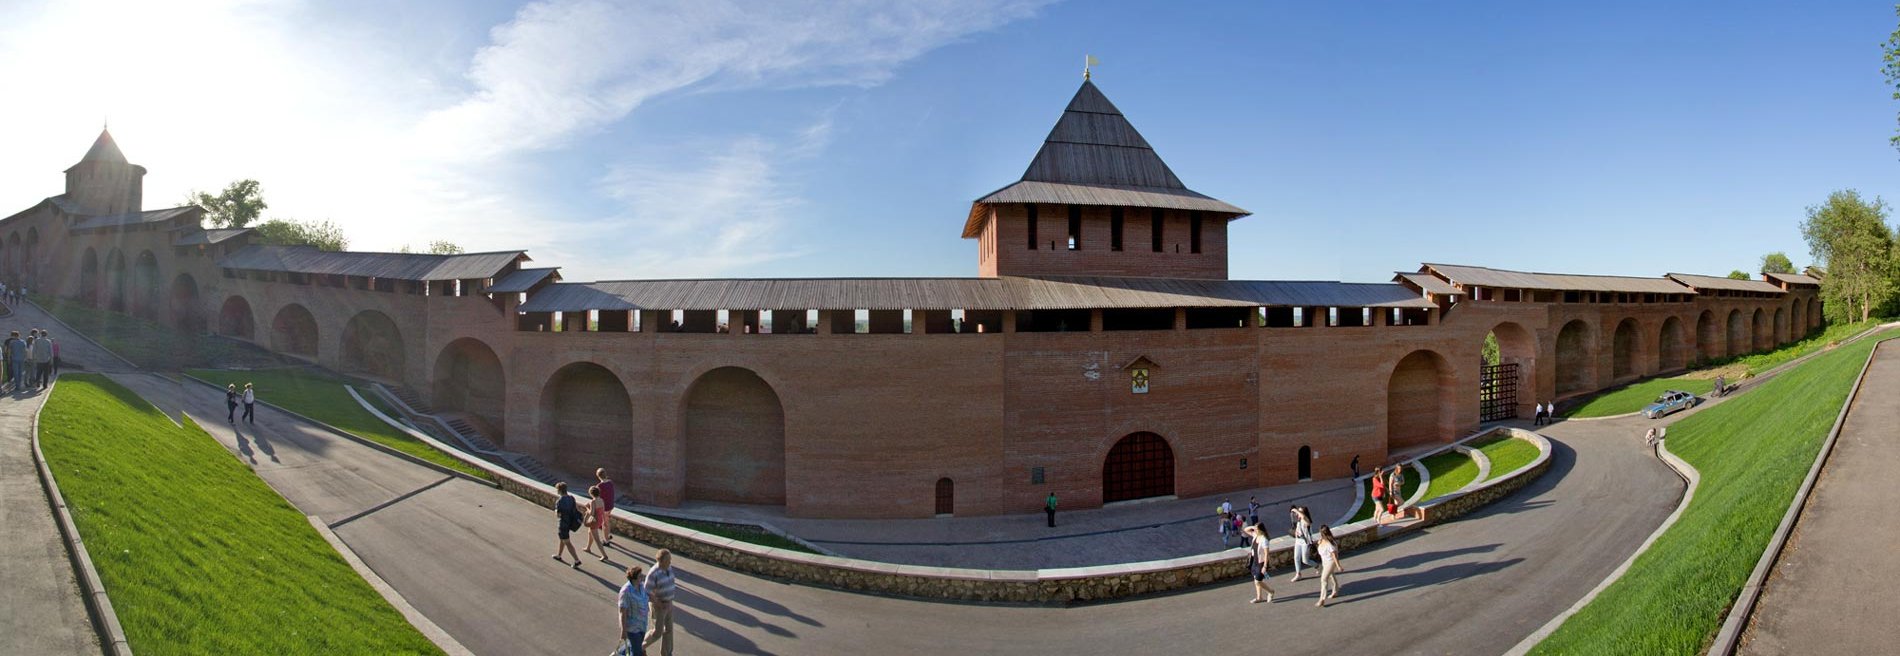 Нижегородский кремль, музей